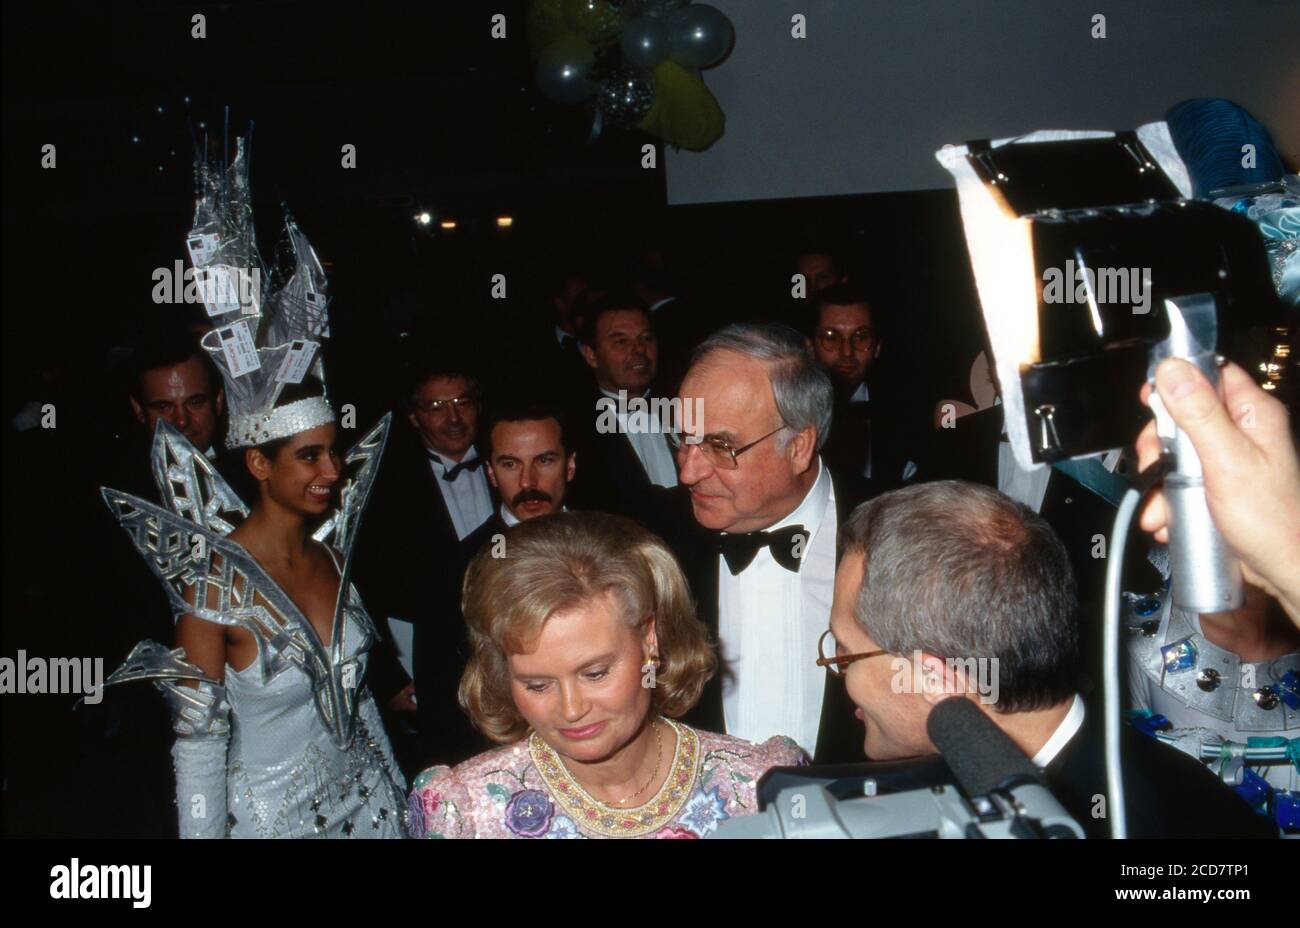 Bundeskanzler Helmut Kohl und Ehefrau Hannelore kommen zum Ball des Sports 1993 in den Rhein-Main-Halln a Wiesbaden, Deutschland 1993. Foto Stock